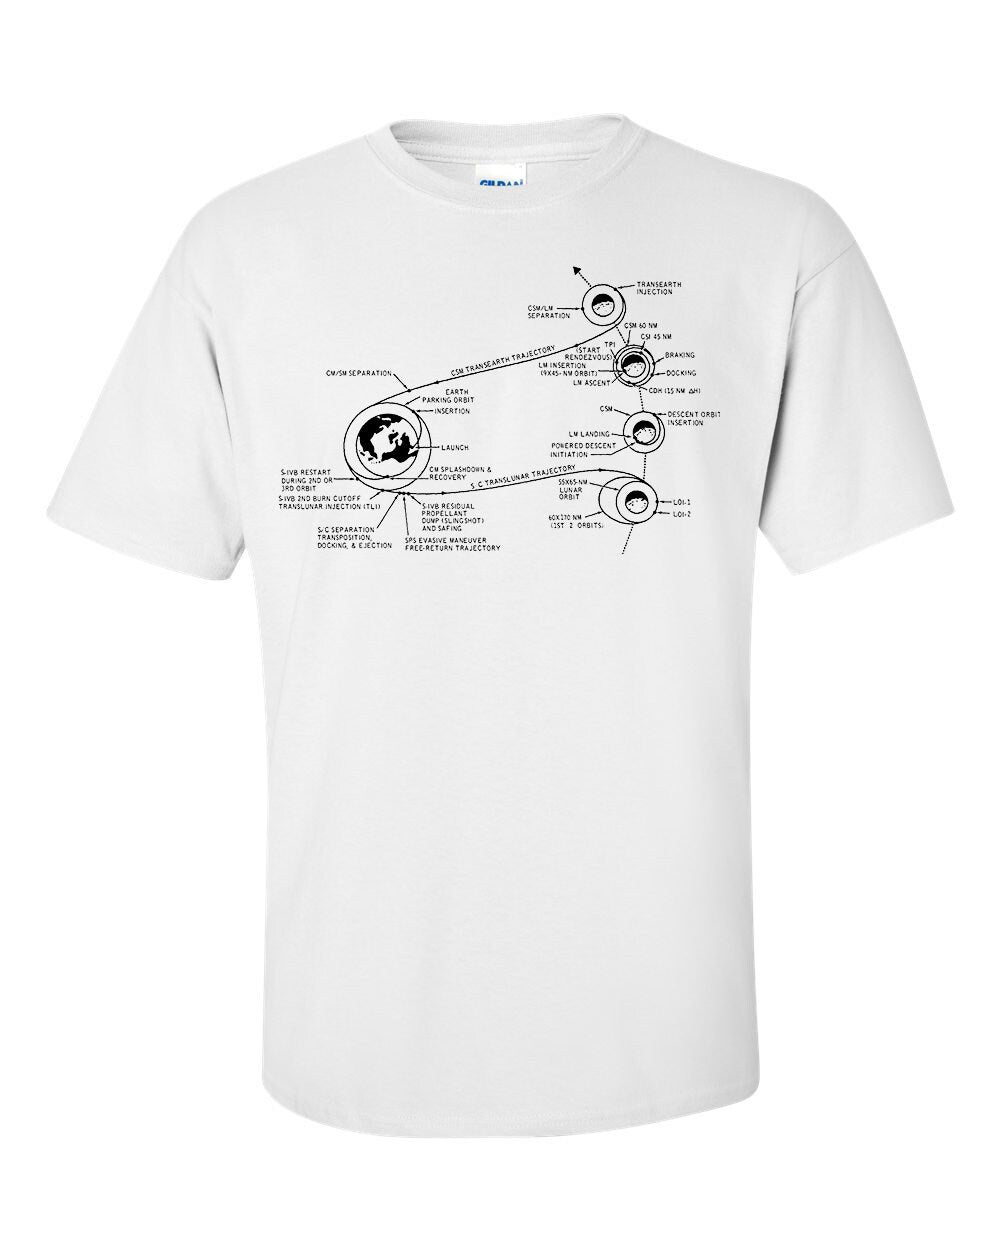 NASA Apollo 11 Moon Mission Plan T-Shirt